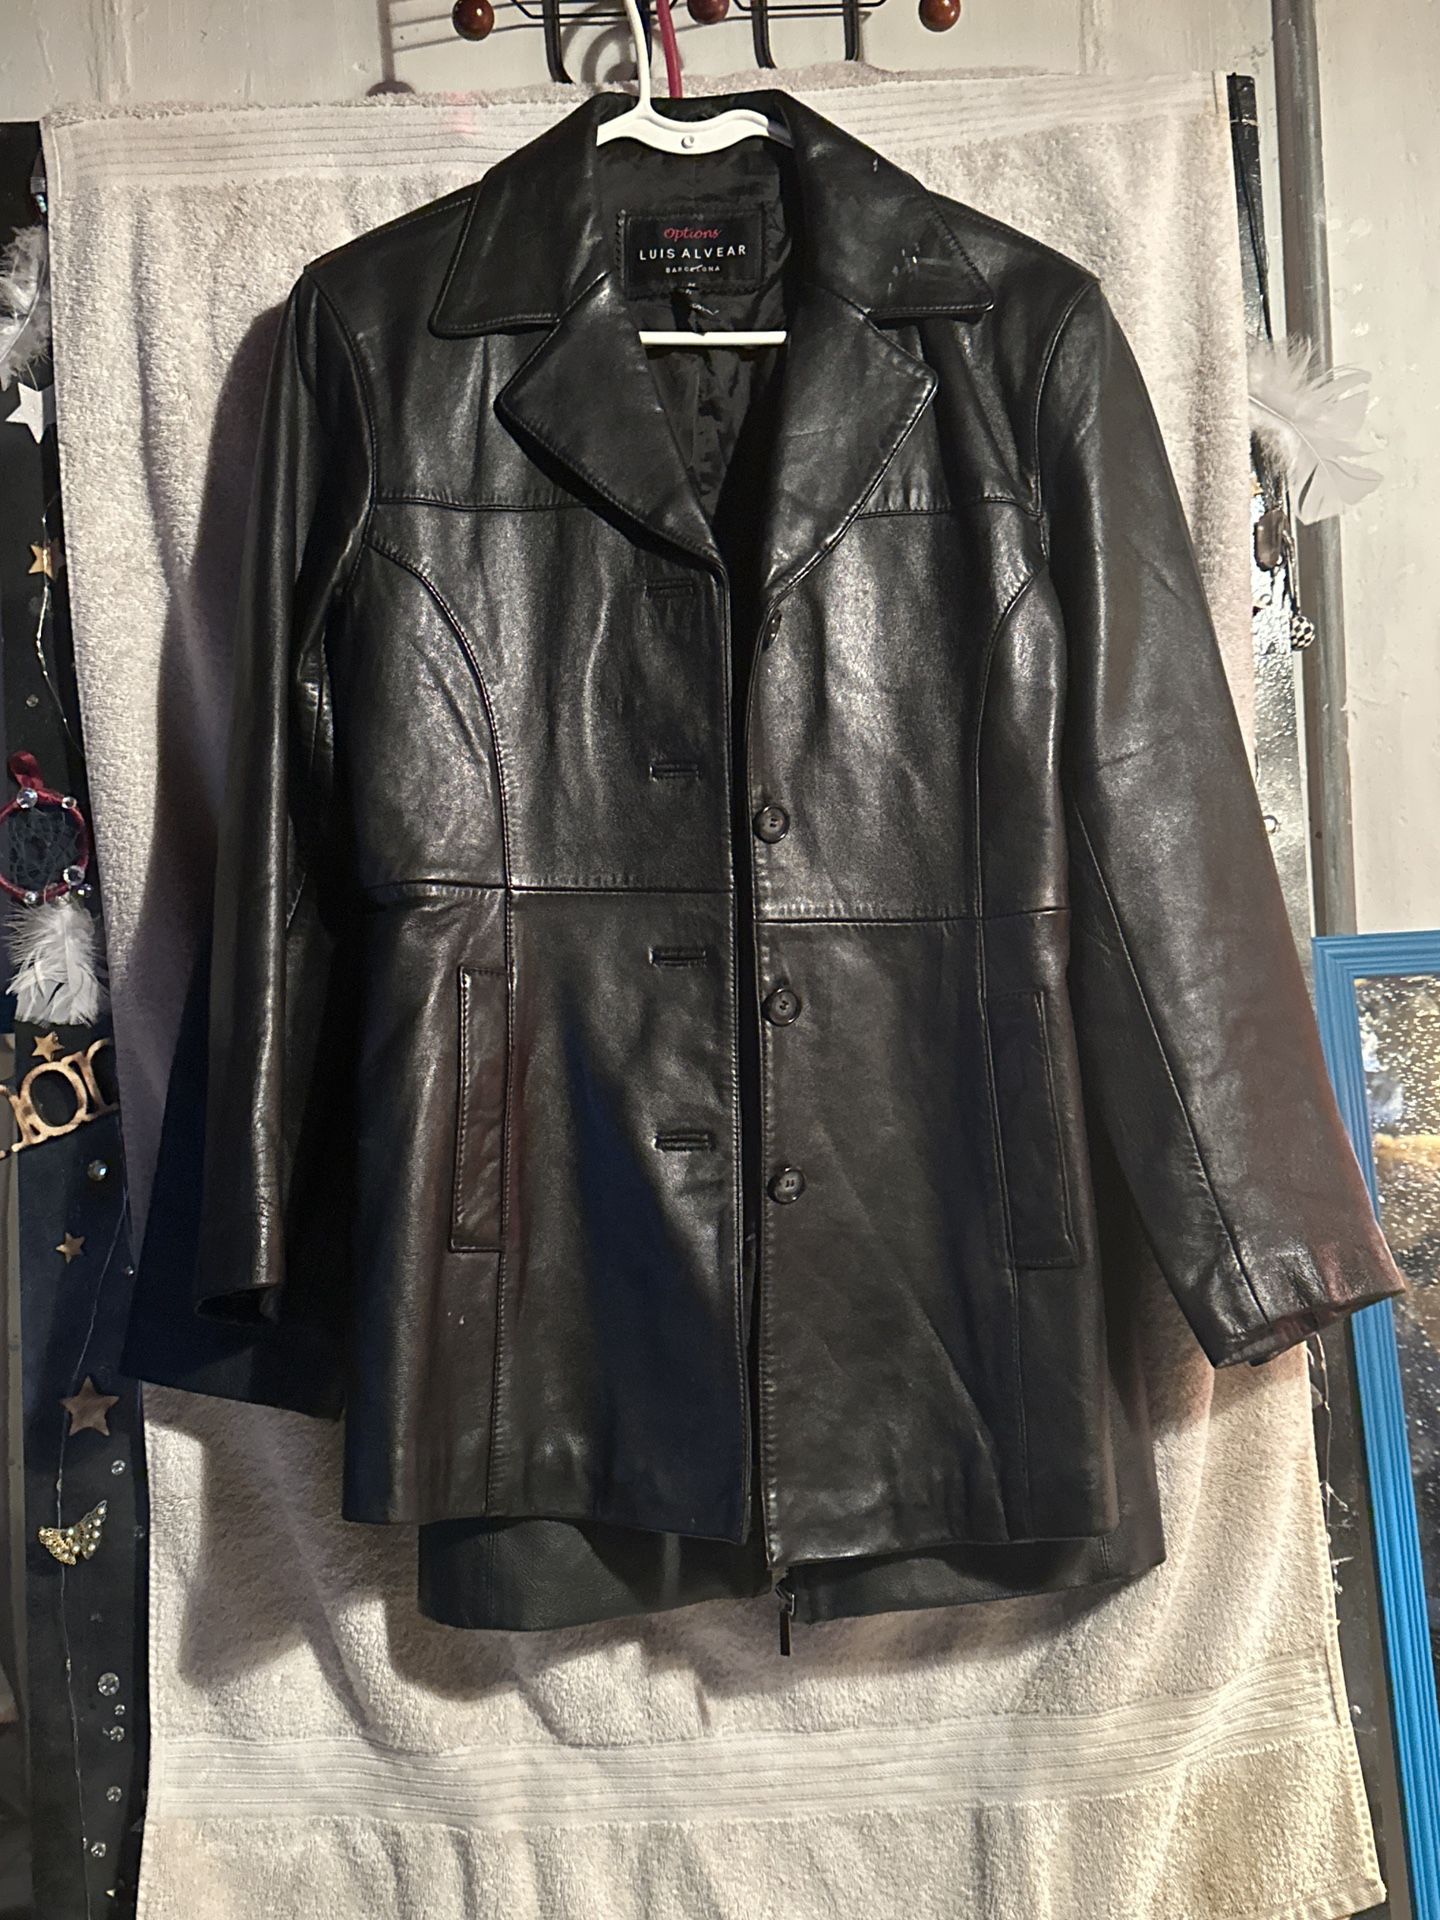 Beautiful Lady’s Black Leather Jacket 